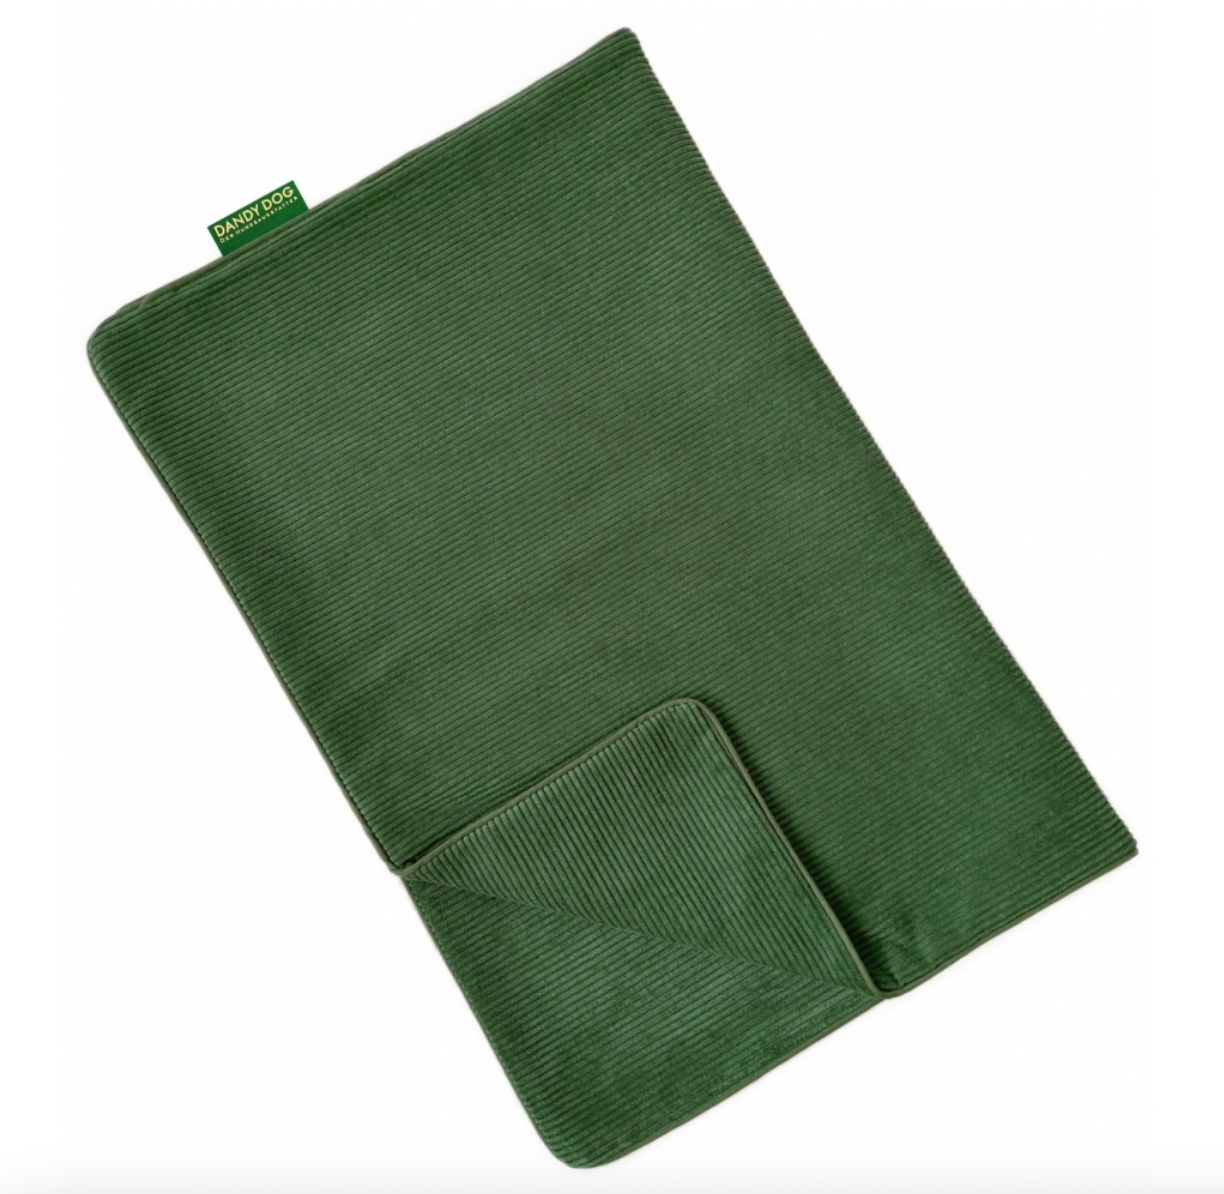 Rib velvet green blanket